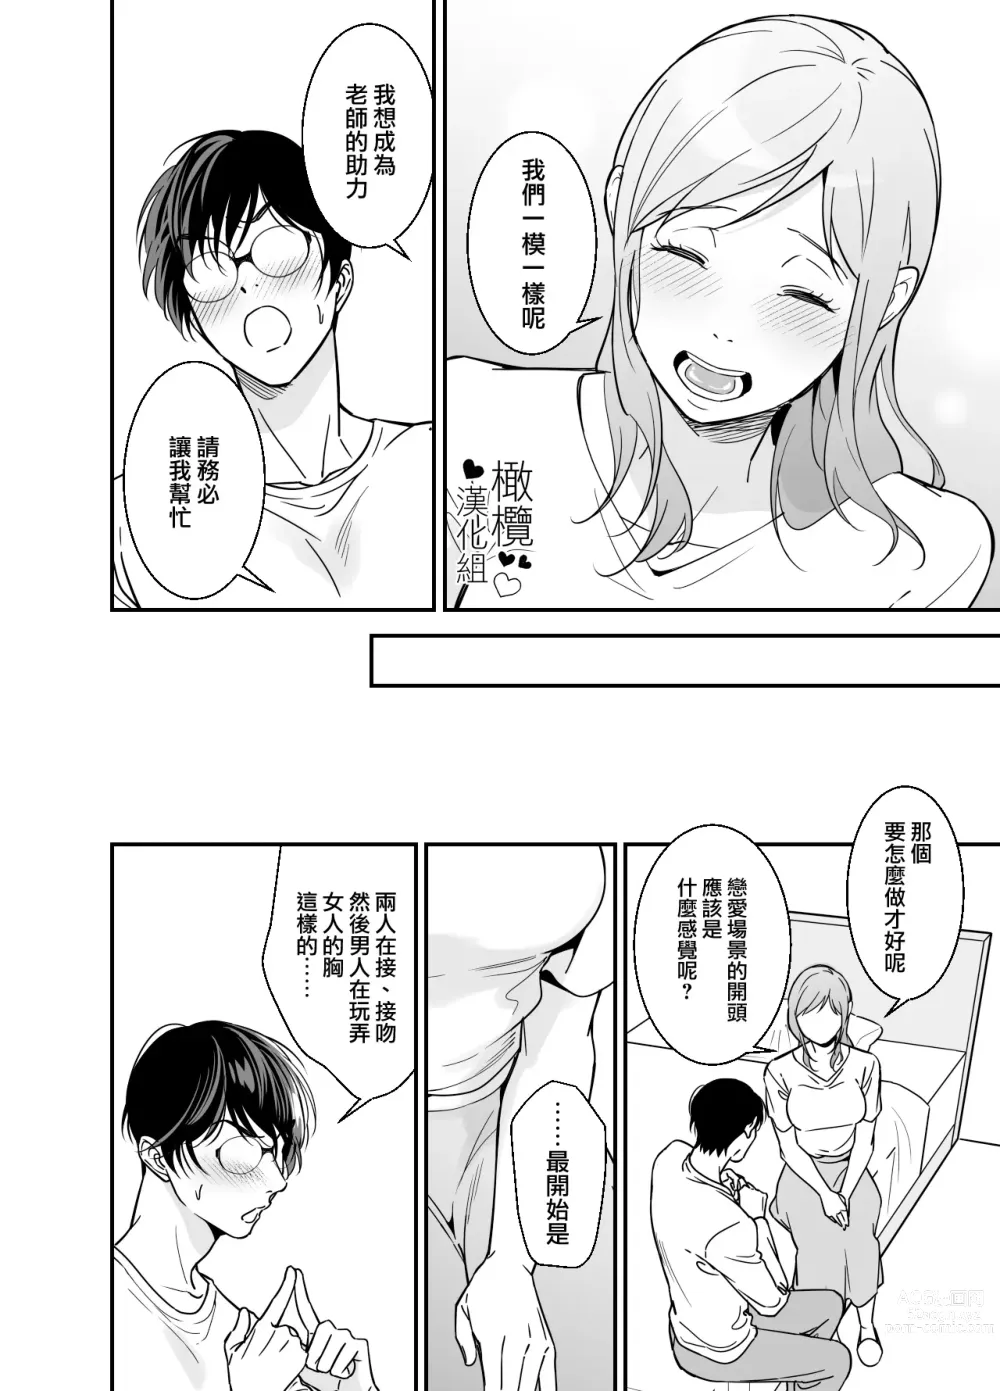 Page 17 of doujinshi 处男小说家和家政妇小姐